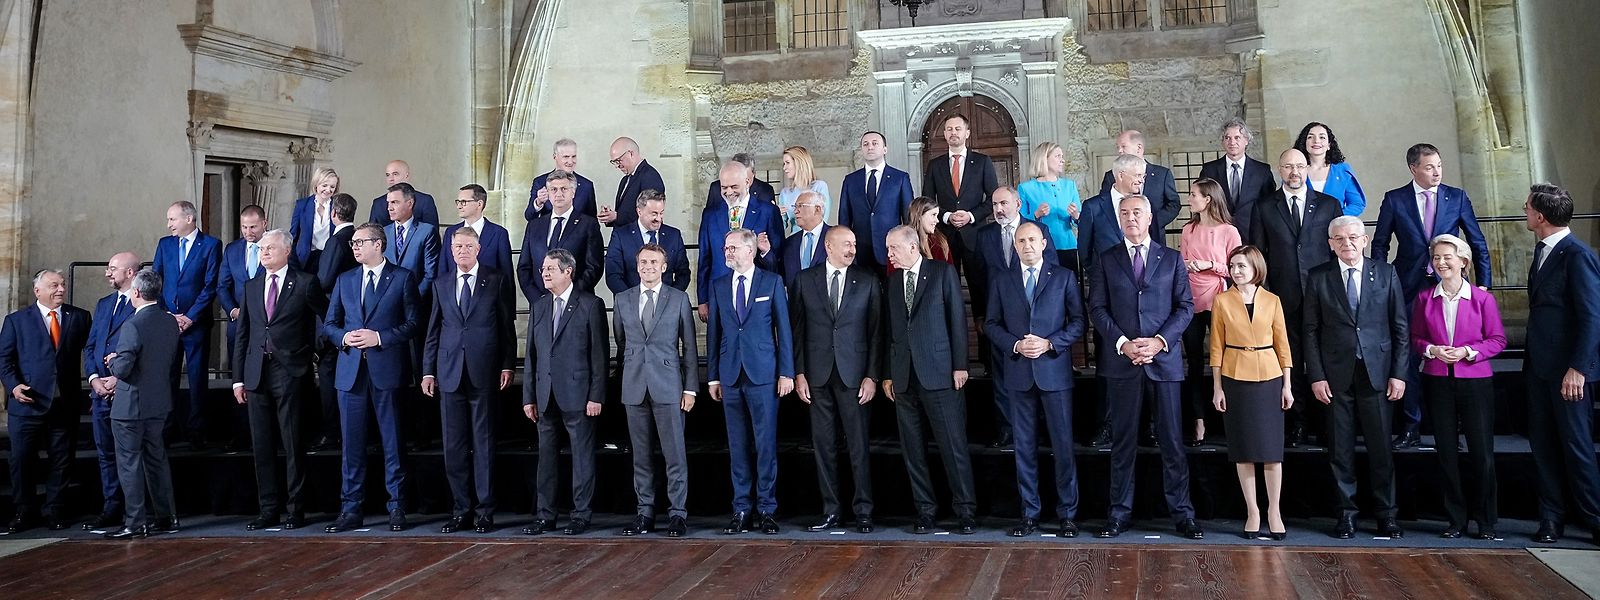 Die "Europäische Politische Gemeinschaft" sucht sich noch konkrete Aufgabenbereiche. Dennoch: Das Treffen in Prag setzt ein Zeichen. 